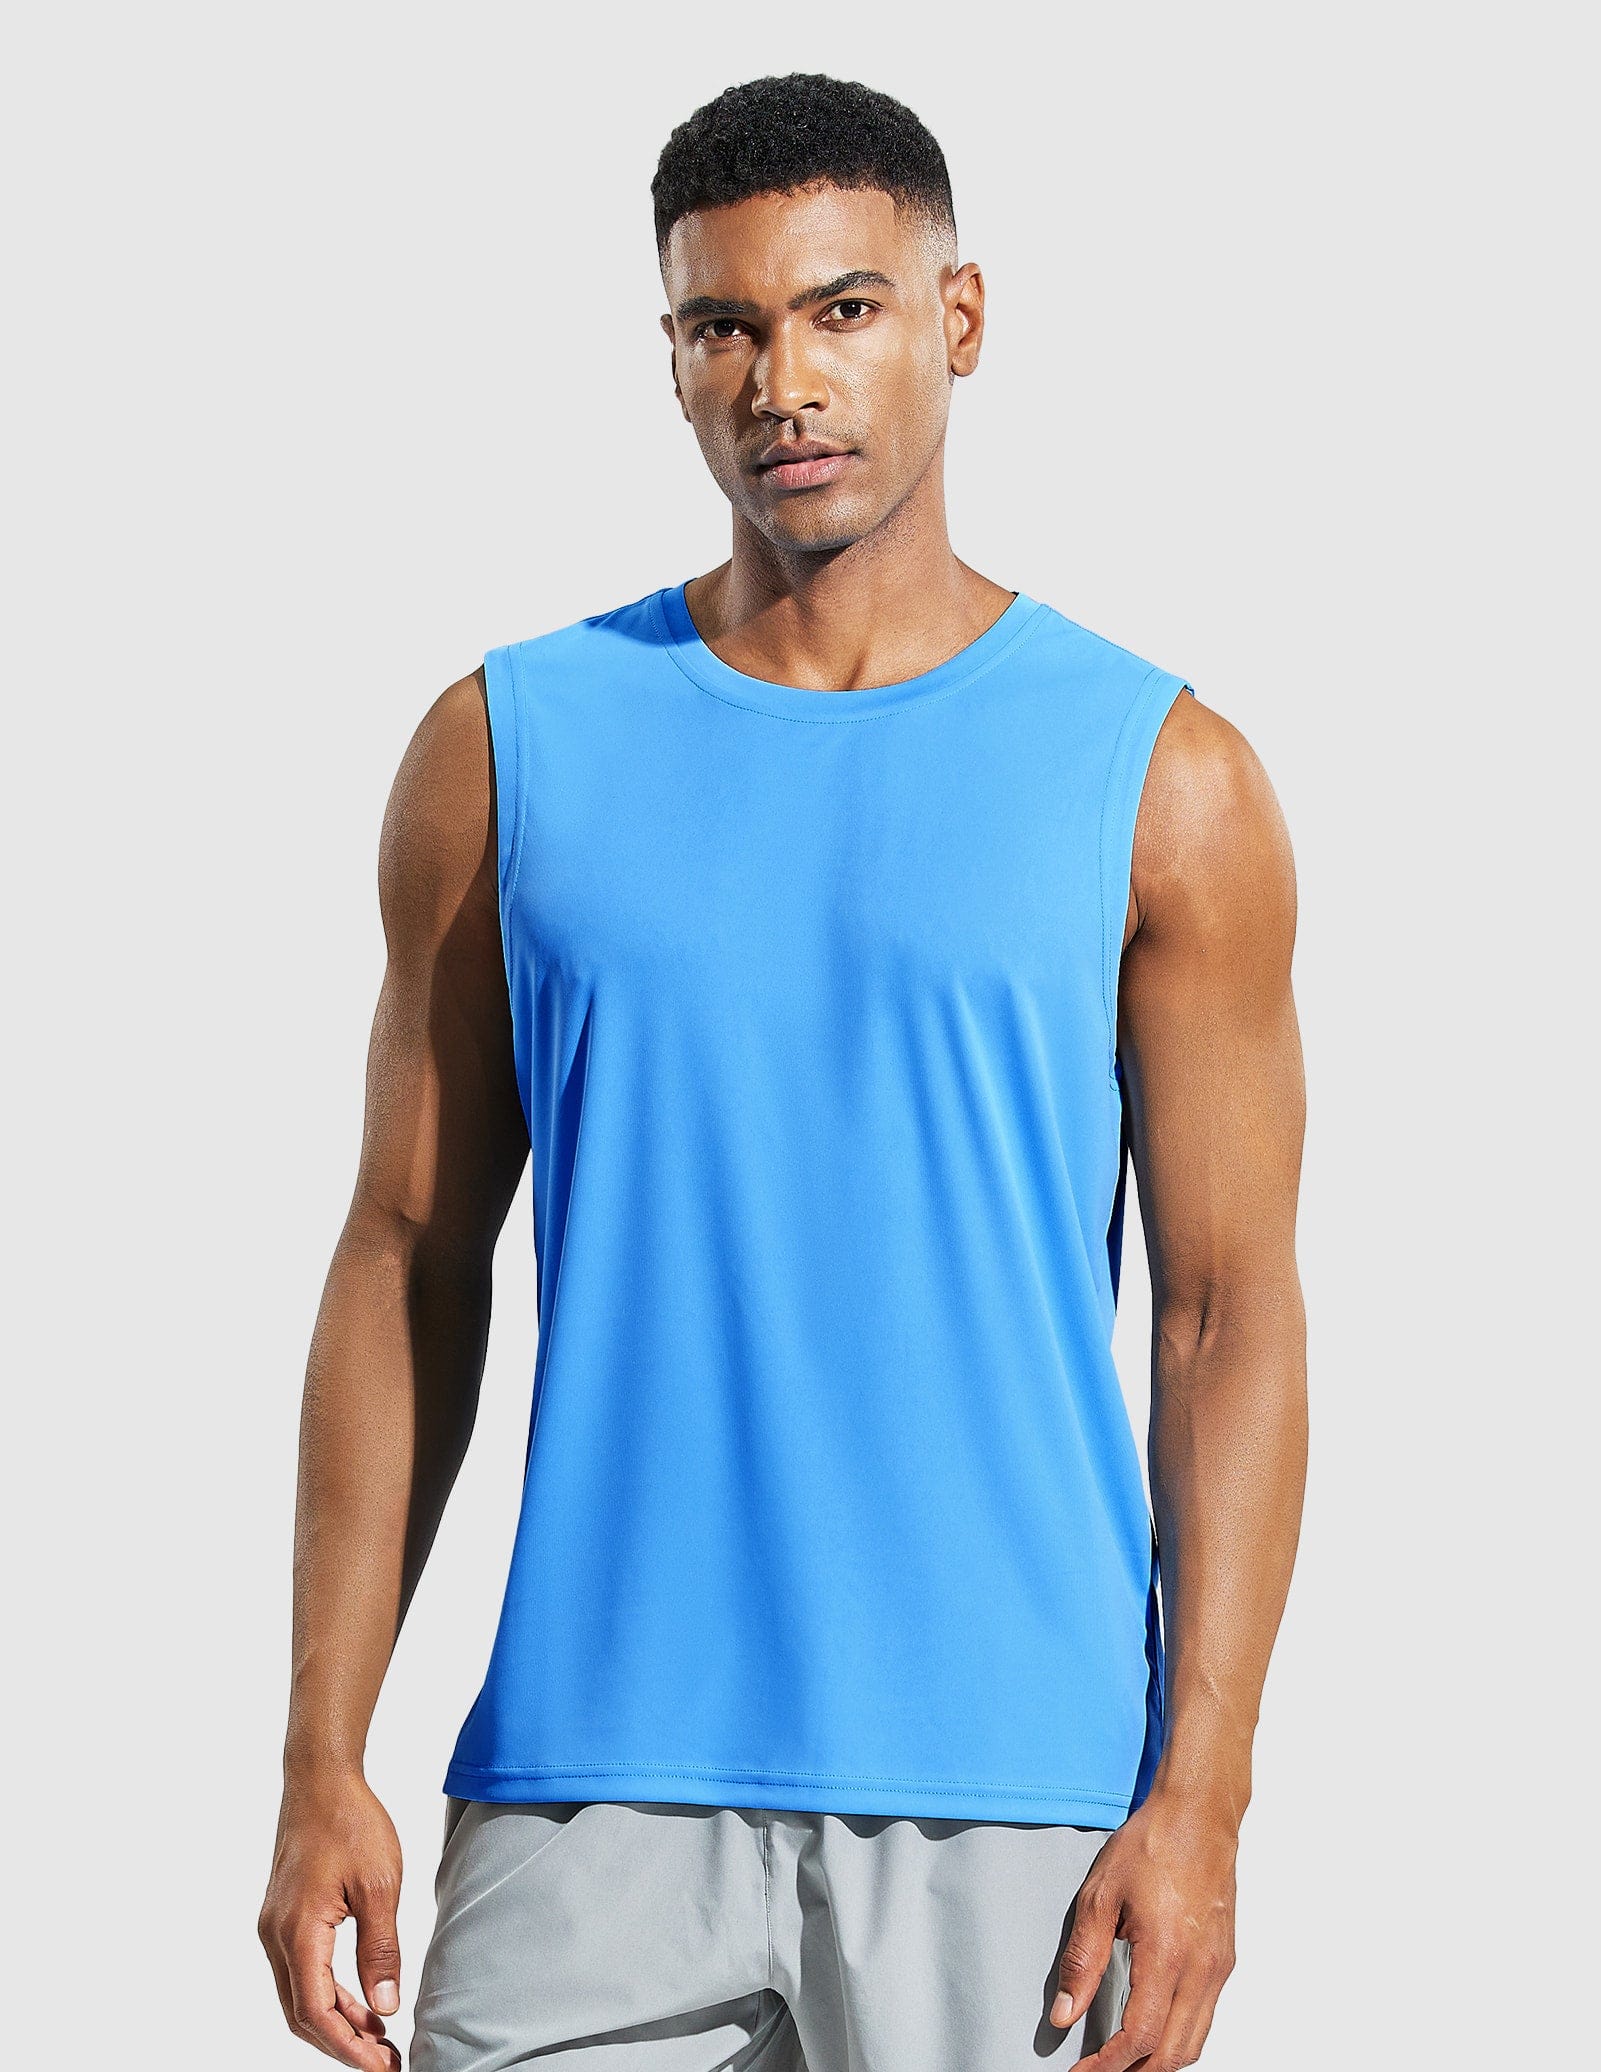 Mier Men's Sleeveless Lightweight UPF 50+ Sun Shirts Quick Dry Tank Tops, Sky Blue / M